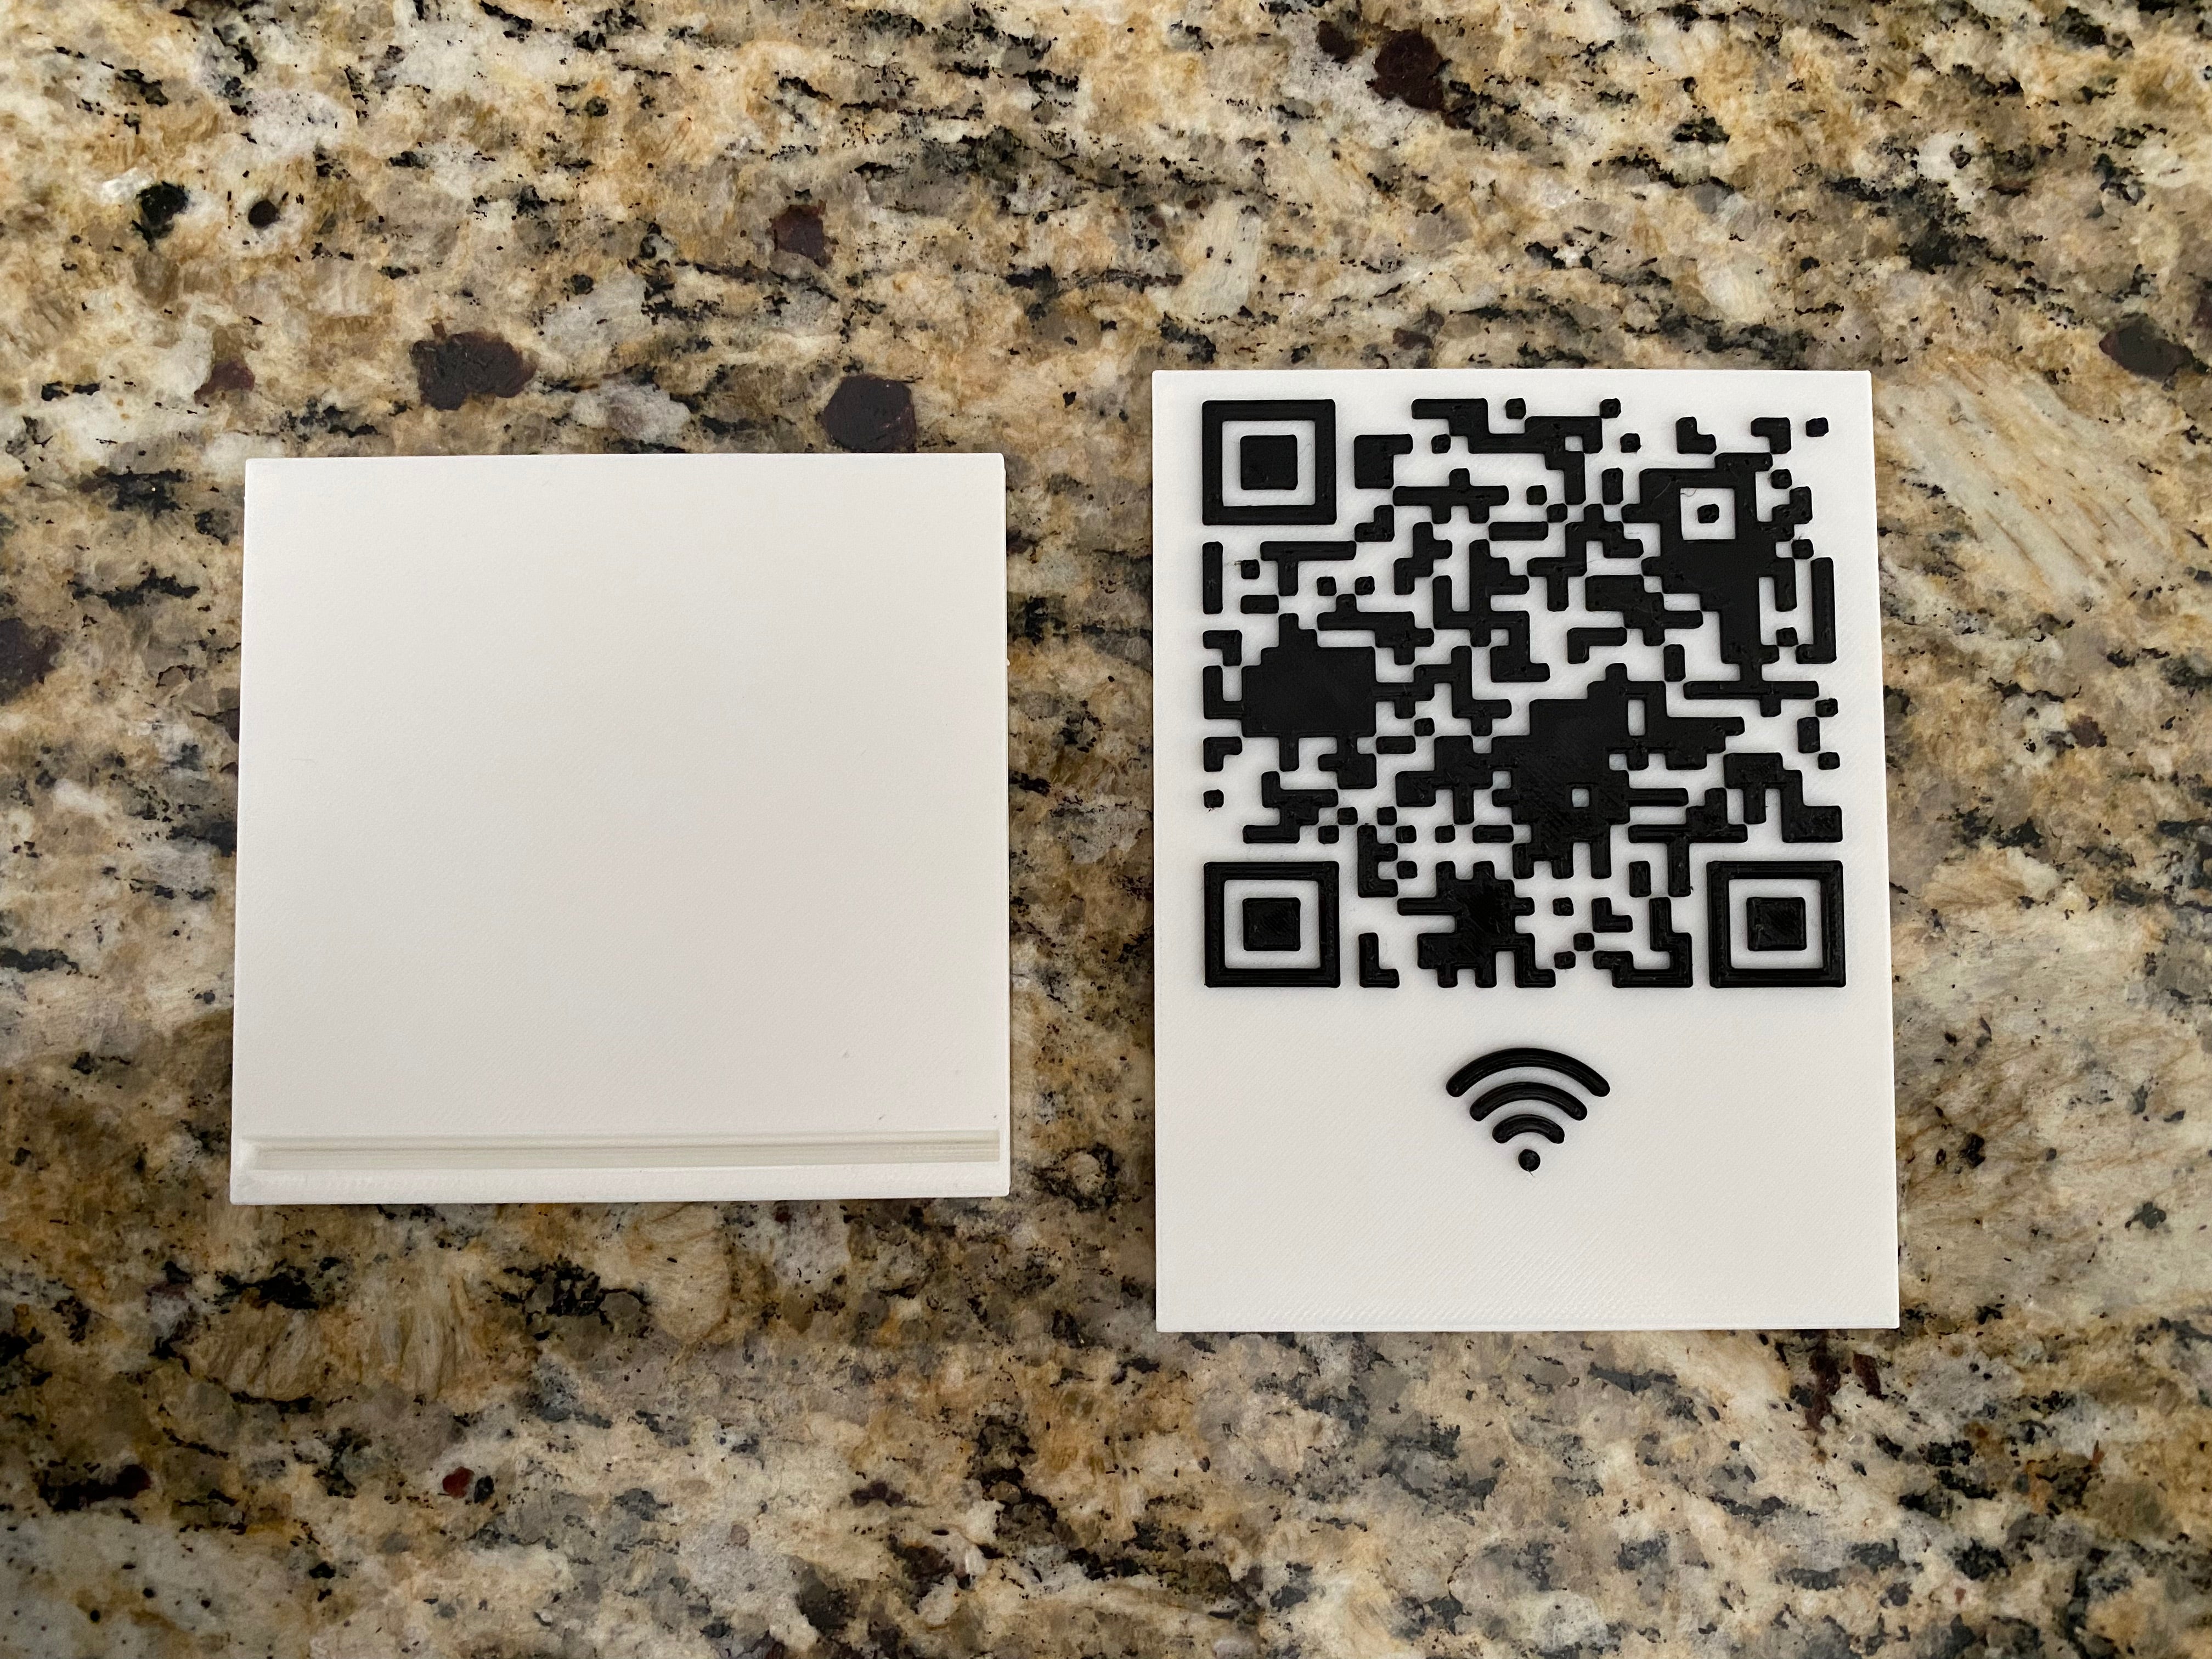 Cartel con código QR WiFi y soporte